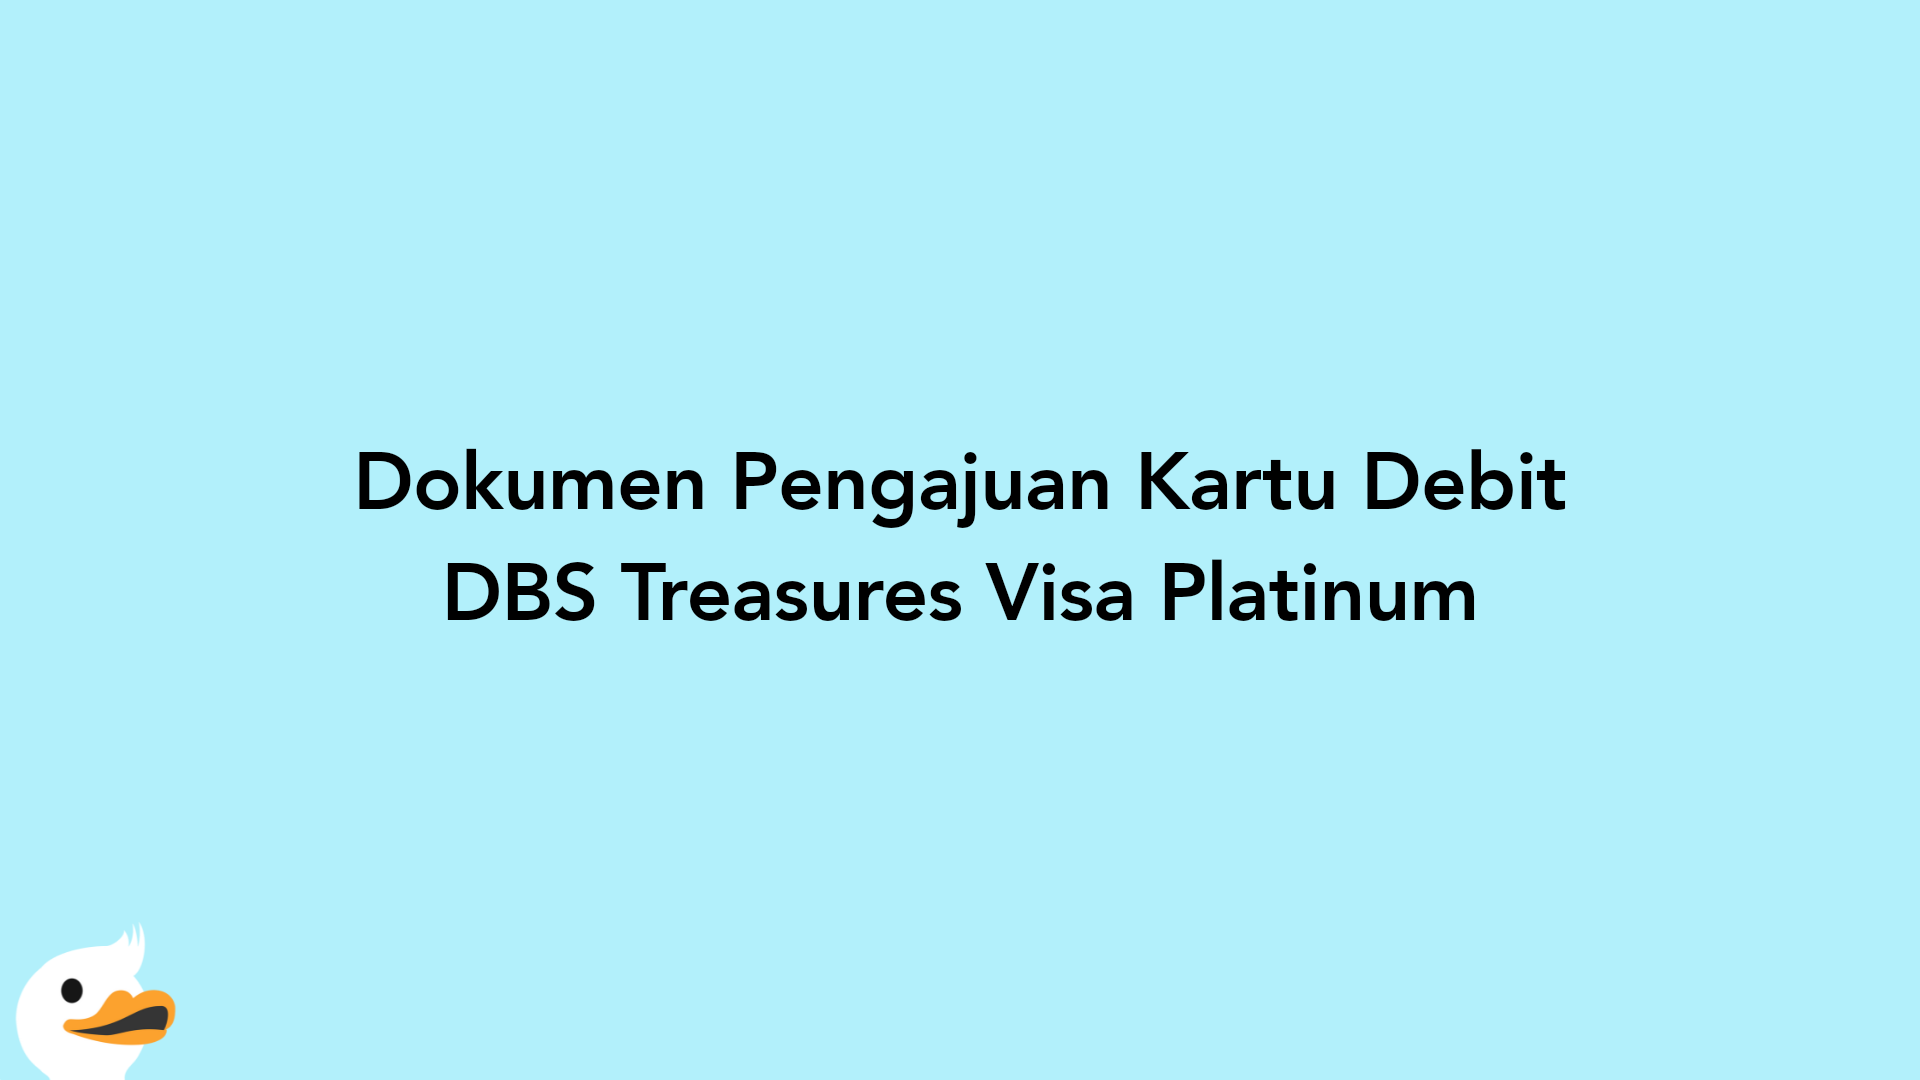 Dokumen Pengajuan Kartu Debit DBS Treasures Visa Platinum